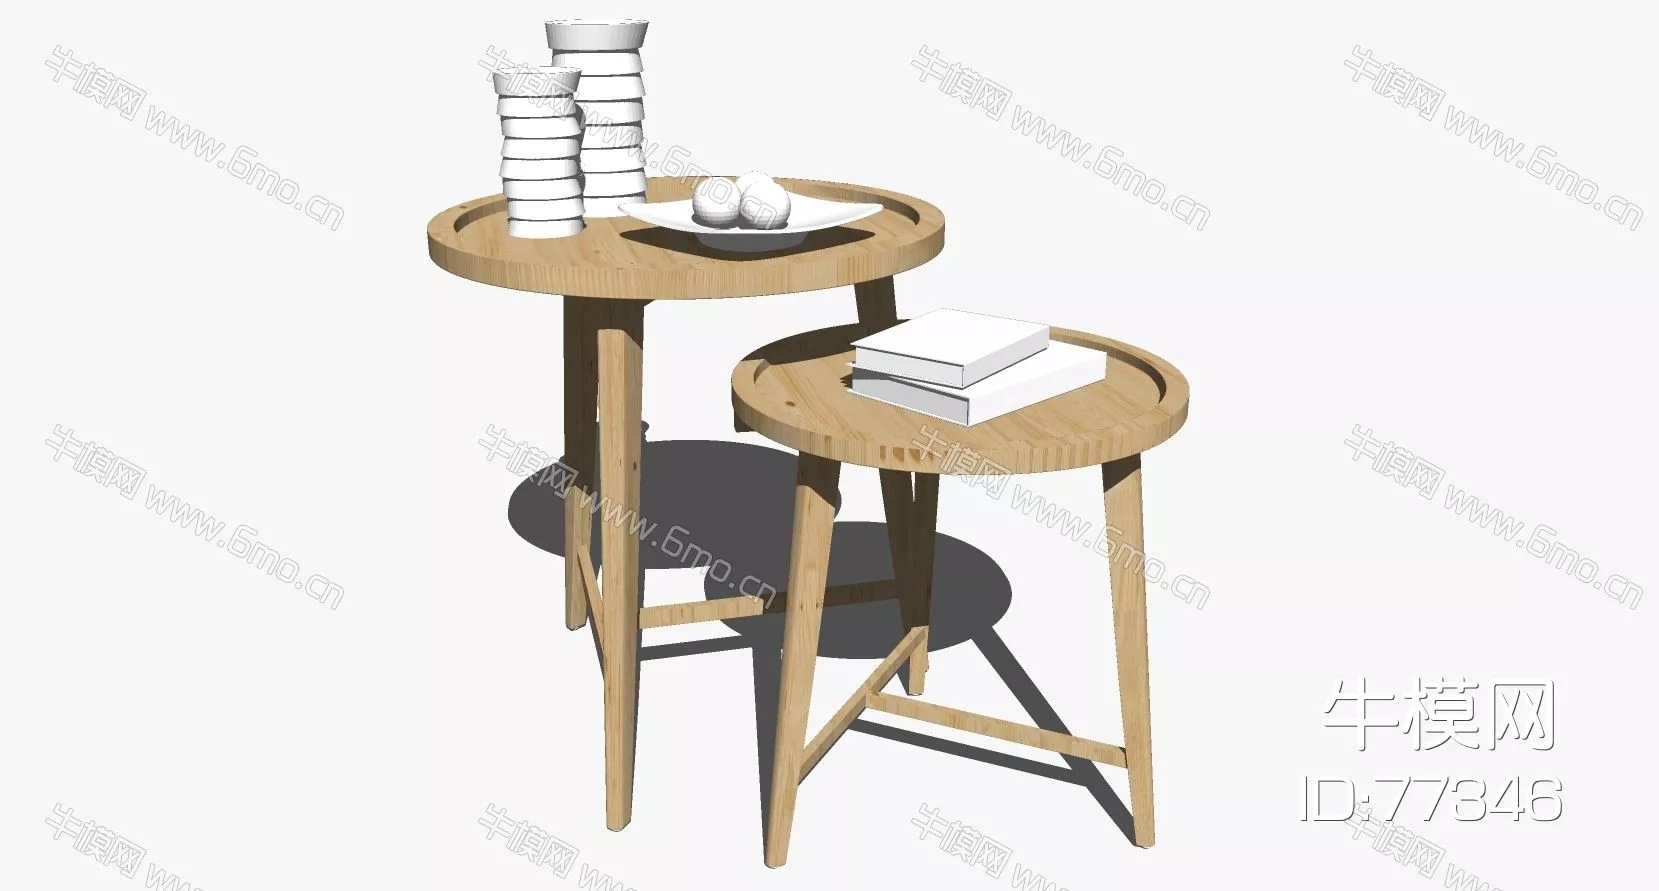 NORDIC SIDE TABLE - SKETCHUP 3D MODEL - ENSCAPE - 77346